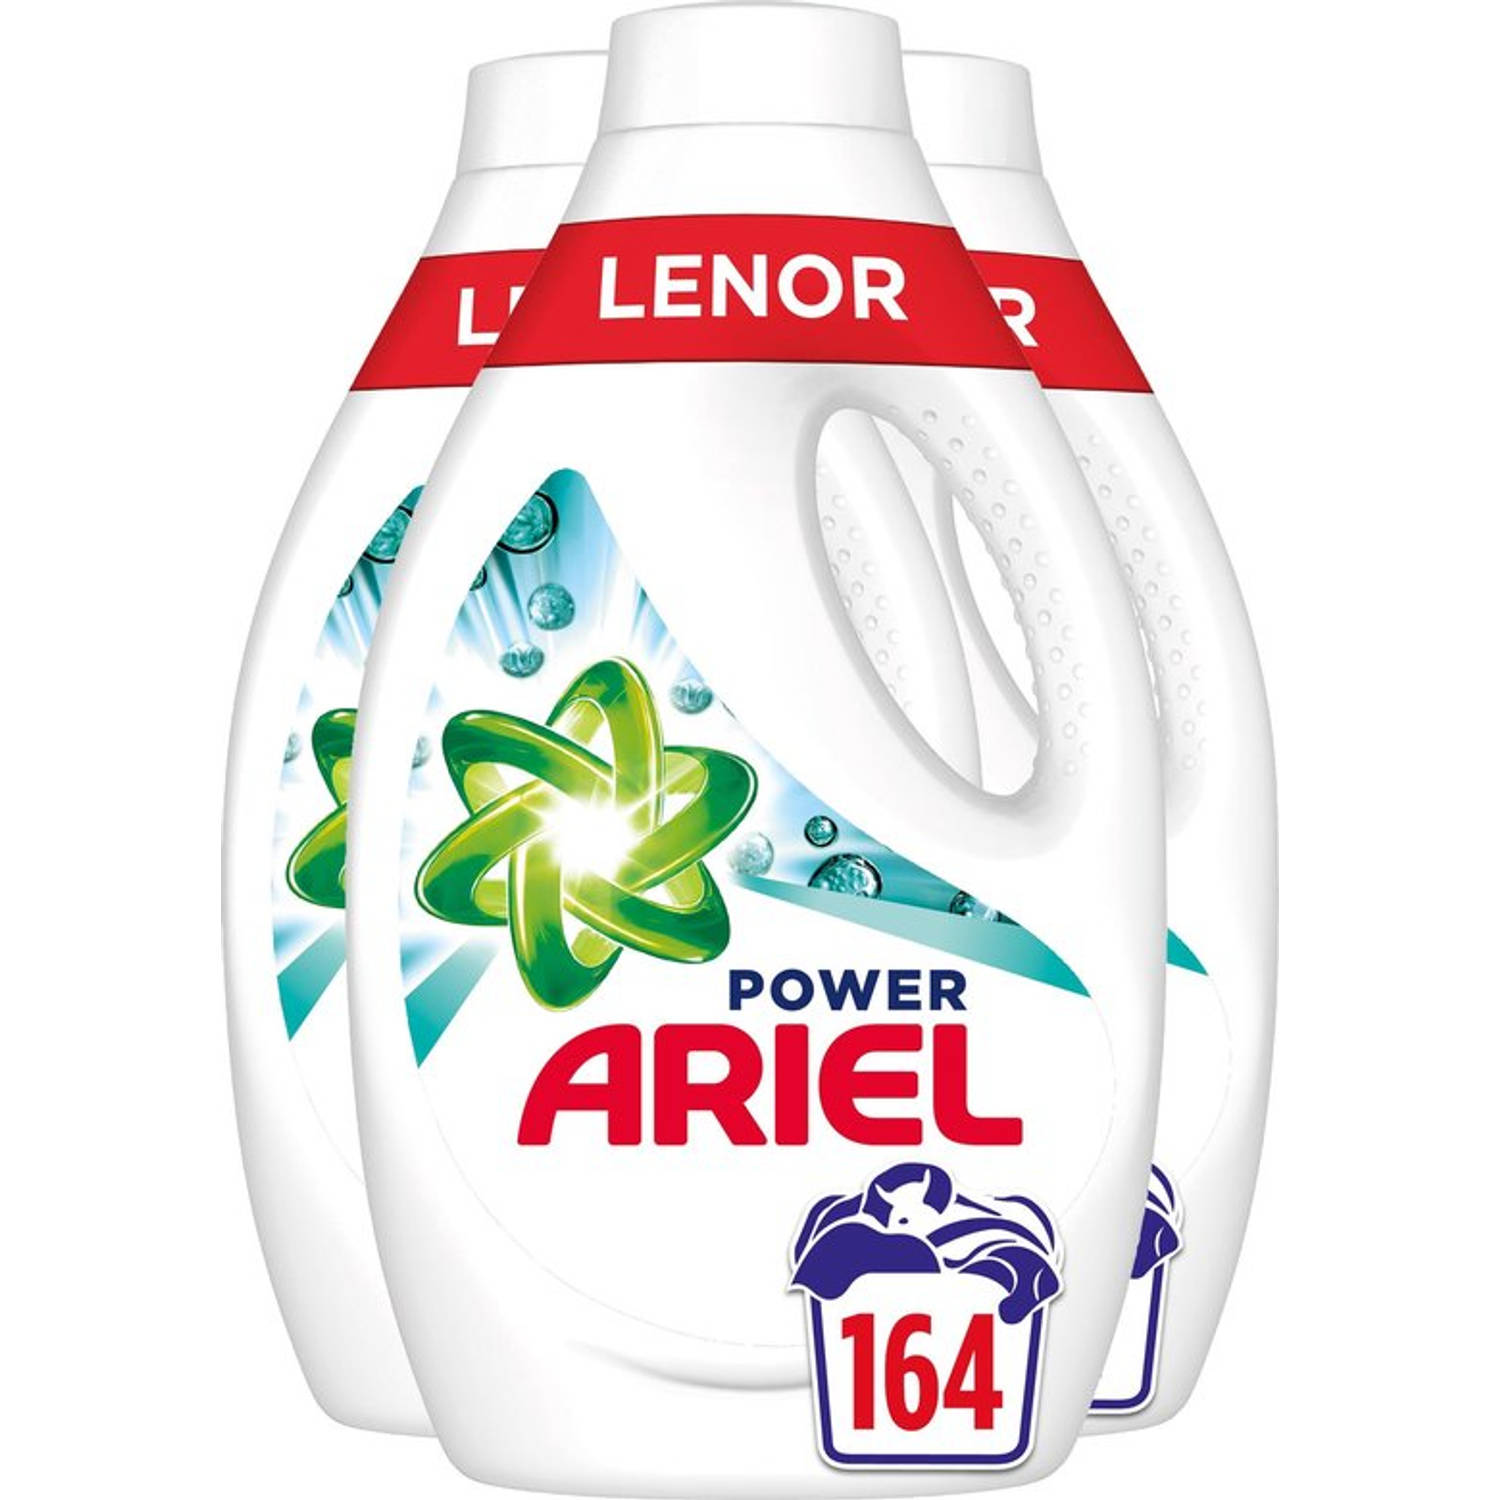 Ariel Vloeibaar Wasmiddel + Touch of Lenor Unstoppables - 4x41 Wasbeurten - Voordeelverpakking